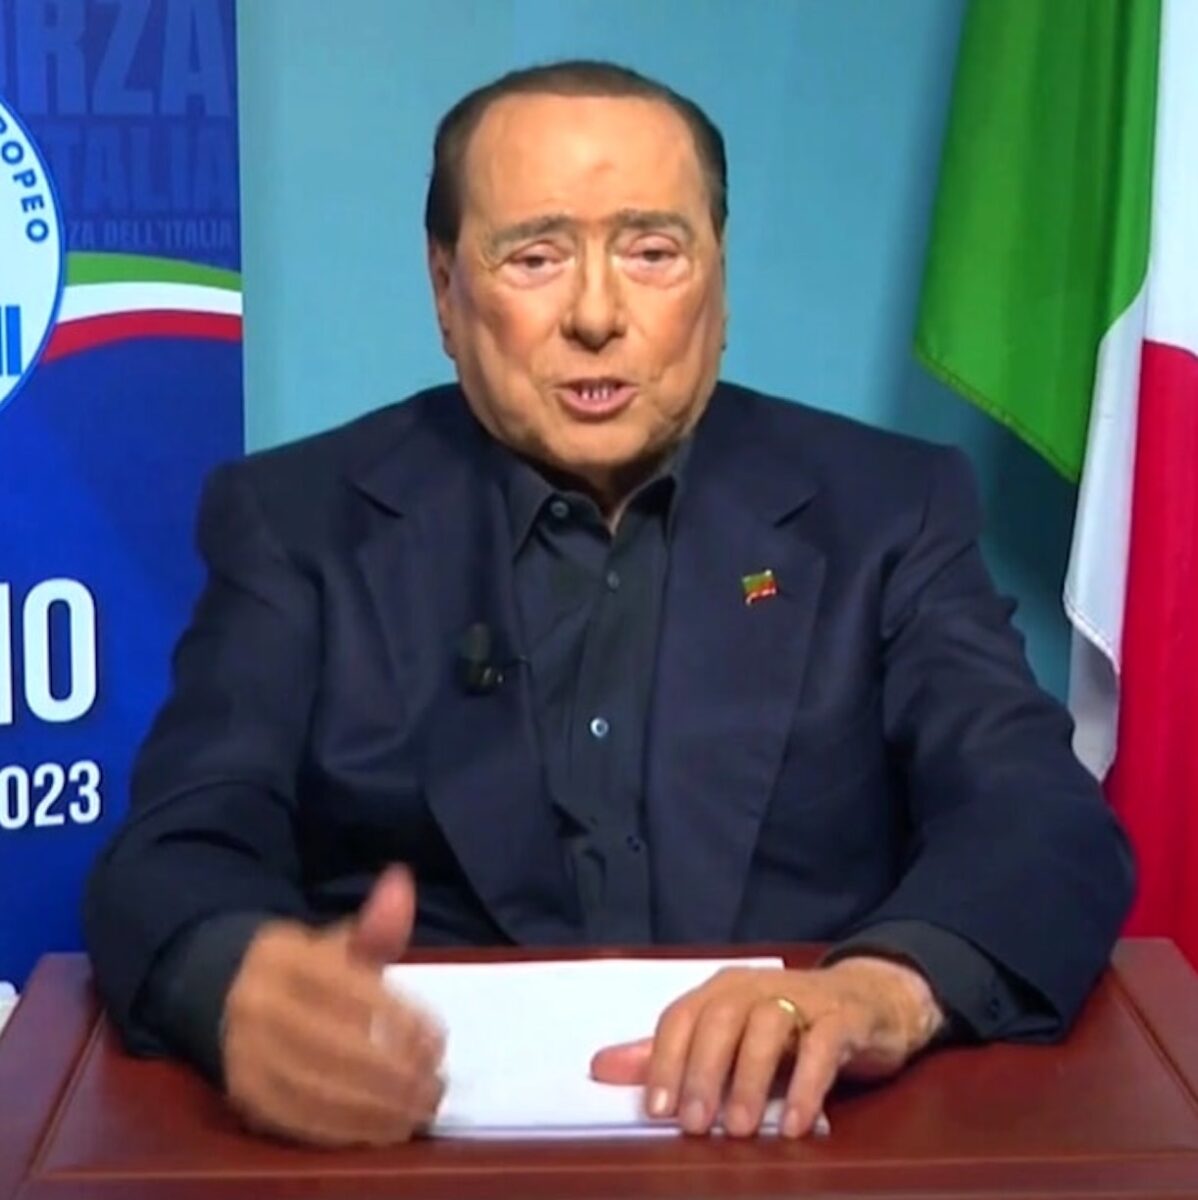 Helena Prestes e il messaggio a Silvio Berlusconi all’Isola dei Famosi